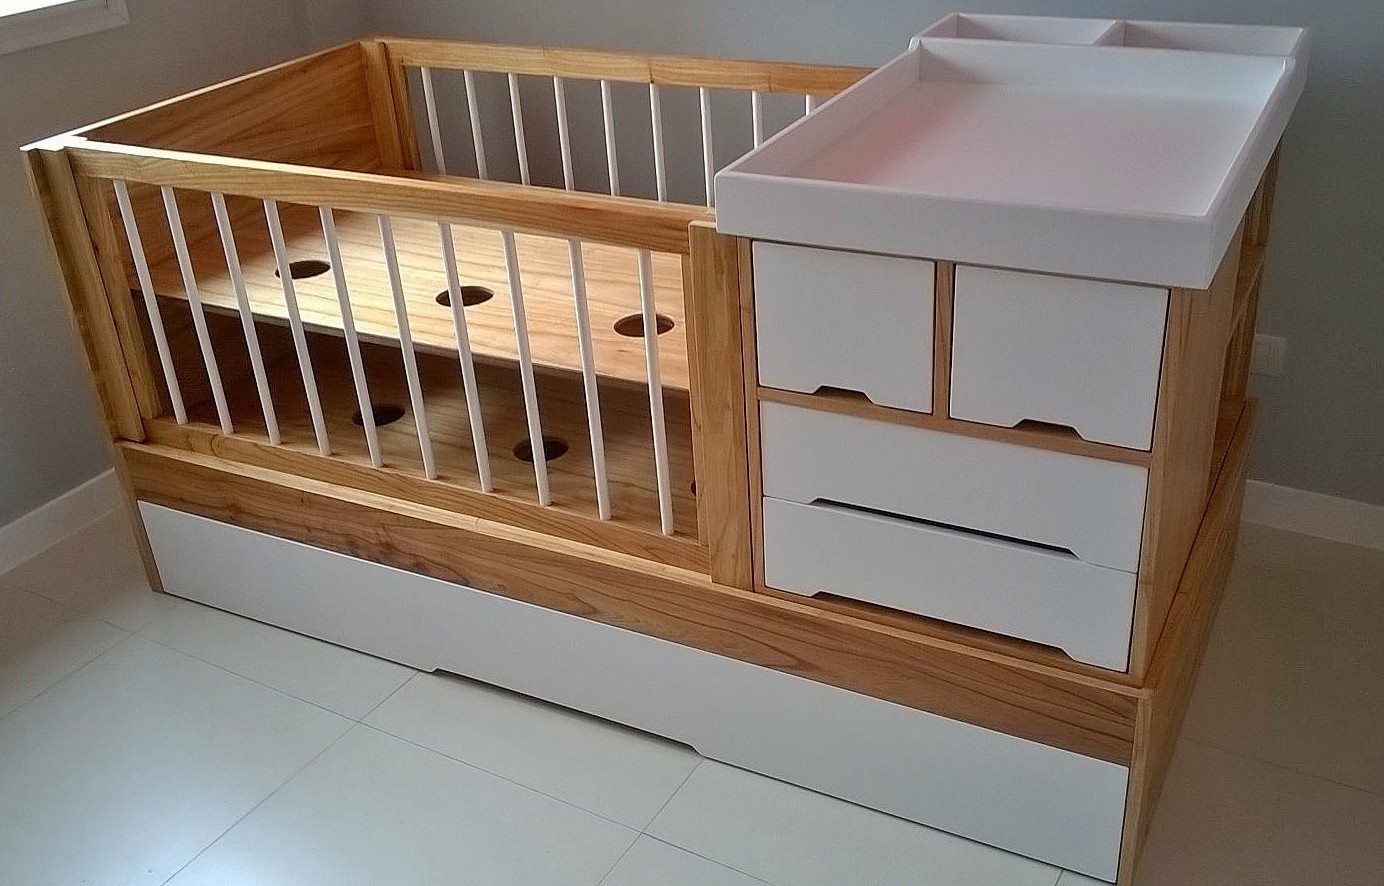 Muebles escandinavos, möbele möbele Dormitorios infantiles escandinavos Placares y cómodas